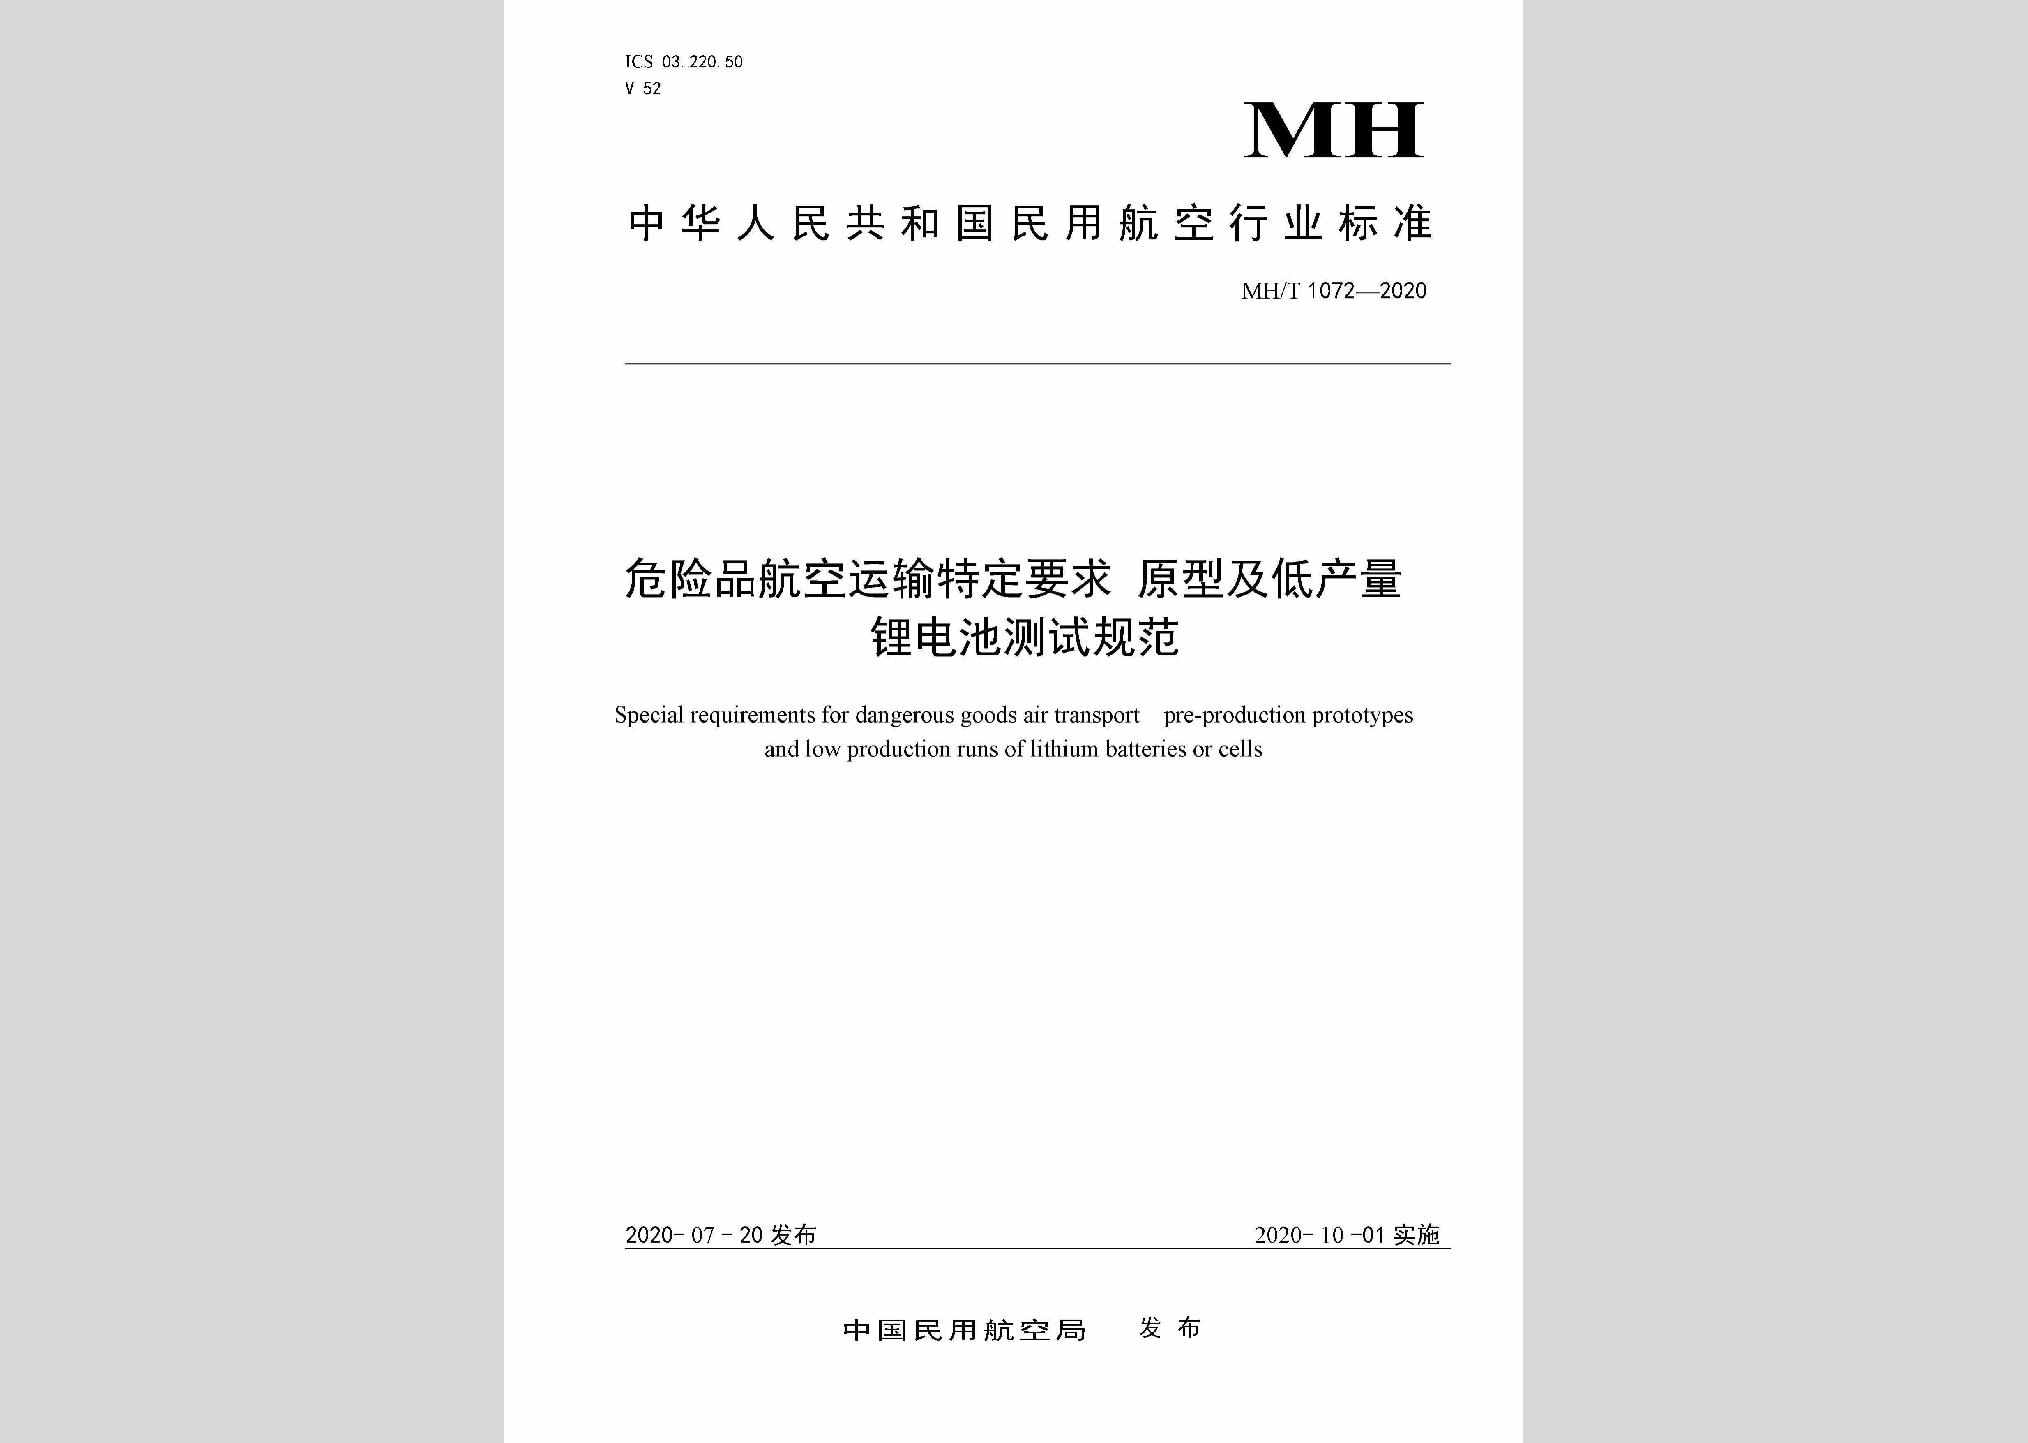 MH/T1072-2020：危险品航空运输特定要求原型及低产量锂电池测试规范